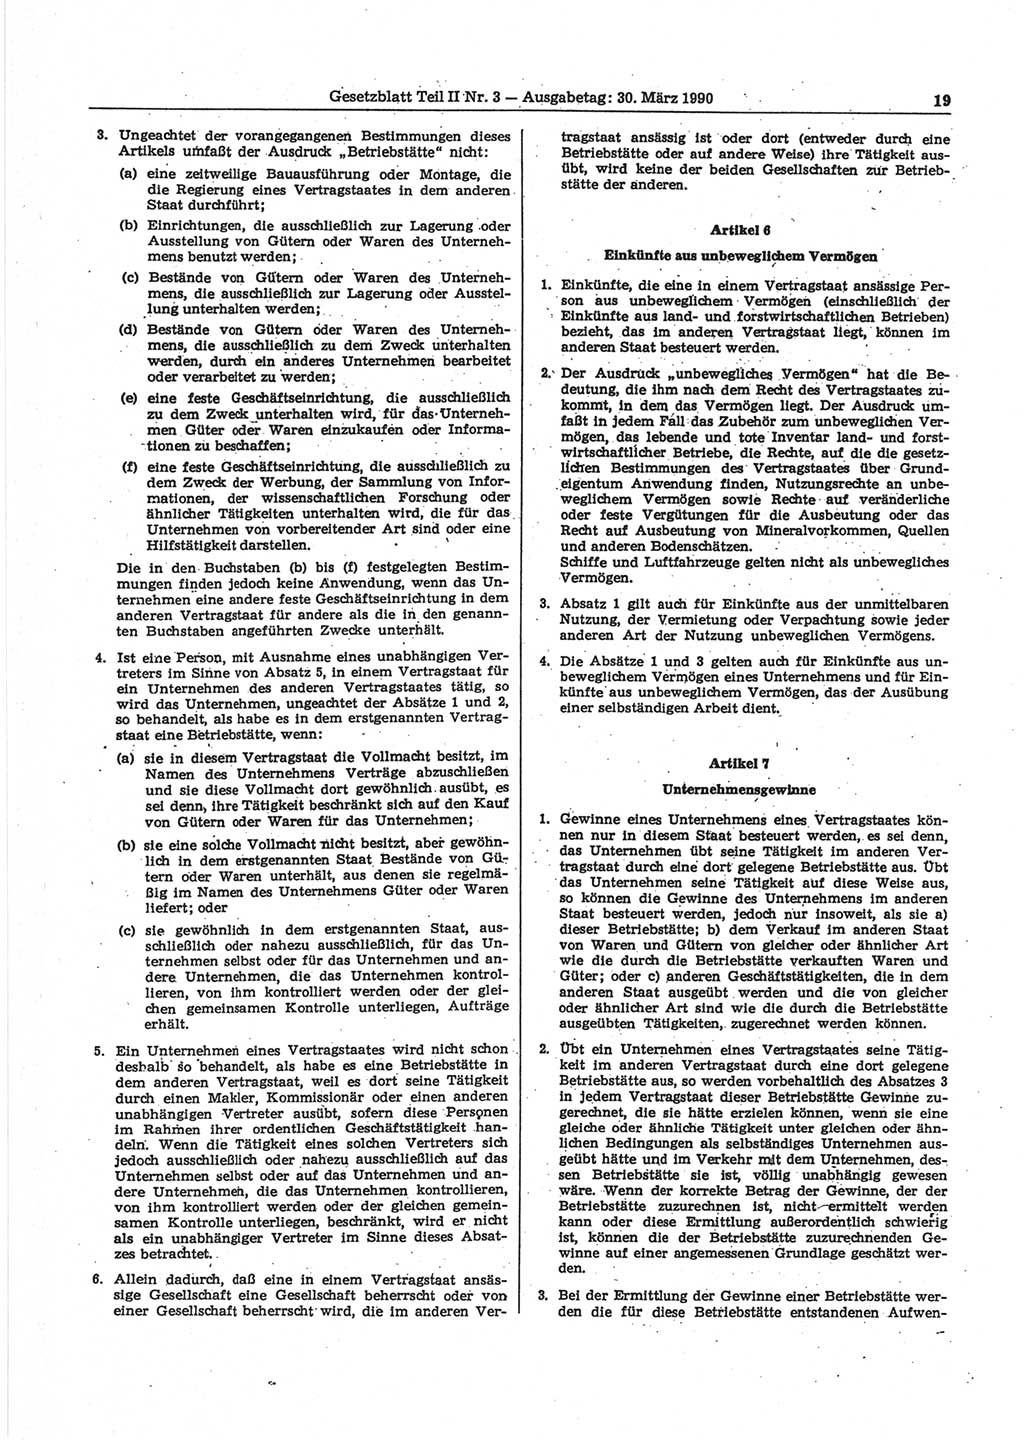 Gesetzblatt (GBl.) der Deutschen Demokratischen Republik (DDR) Teil ⅠⅠ 1990, Seite 19 (GBl. DDR ⅠⅠ 1990, S. 19)